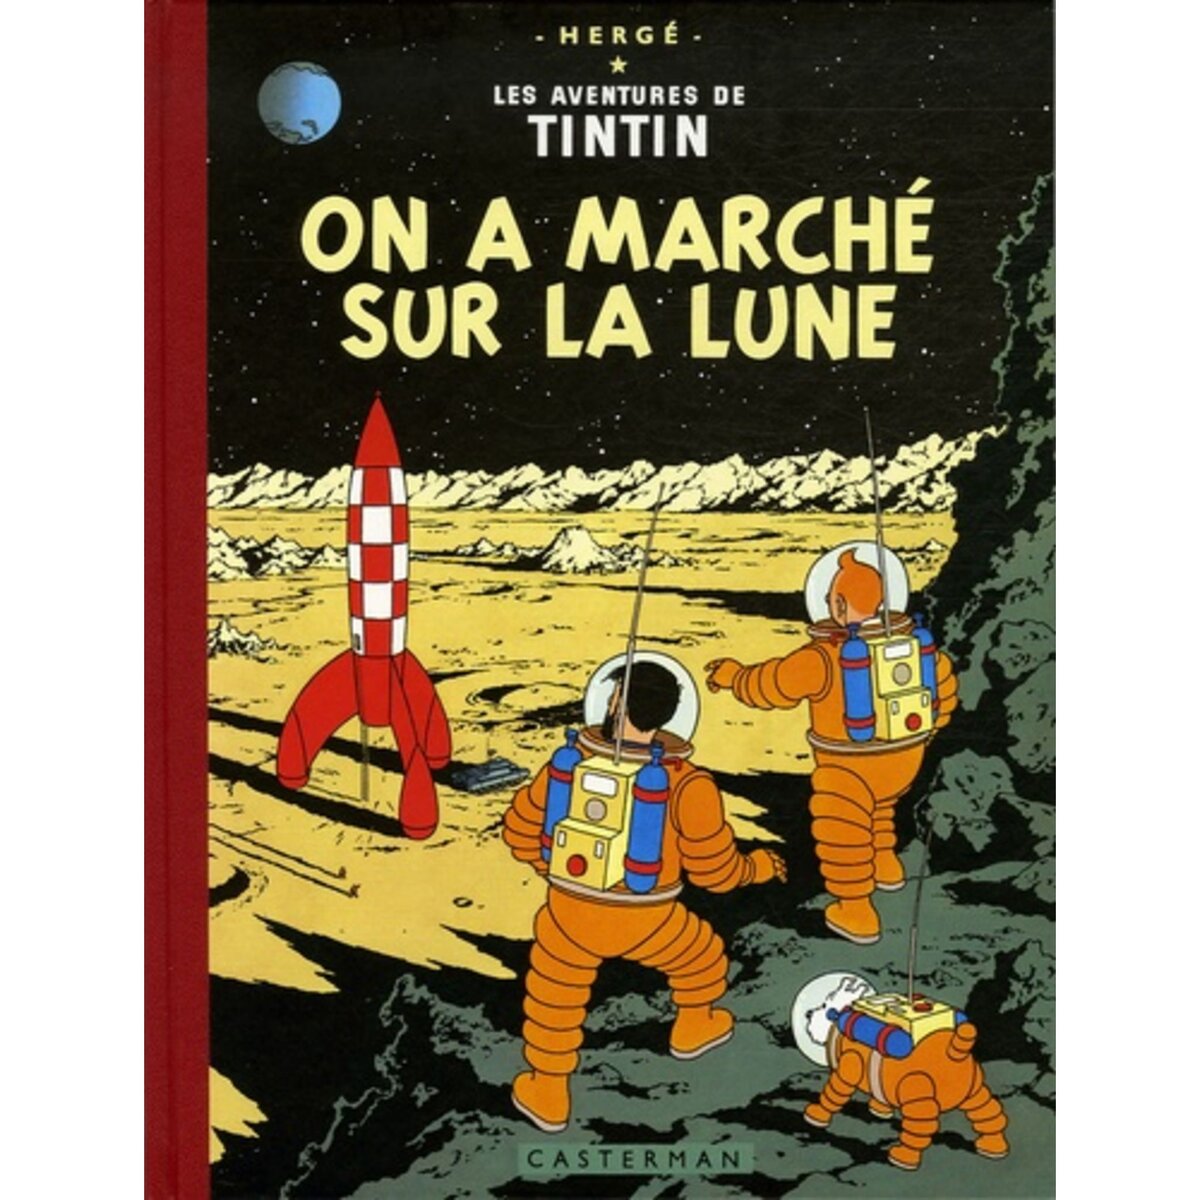  LES AVENTURES DE TINTIN : ON A MARCHE SUR LA LUNE. EDITION FAC-SIMILE EN COULEURS, Hergé